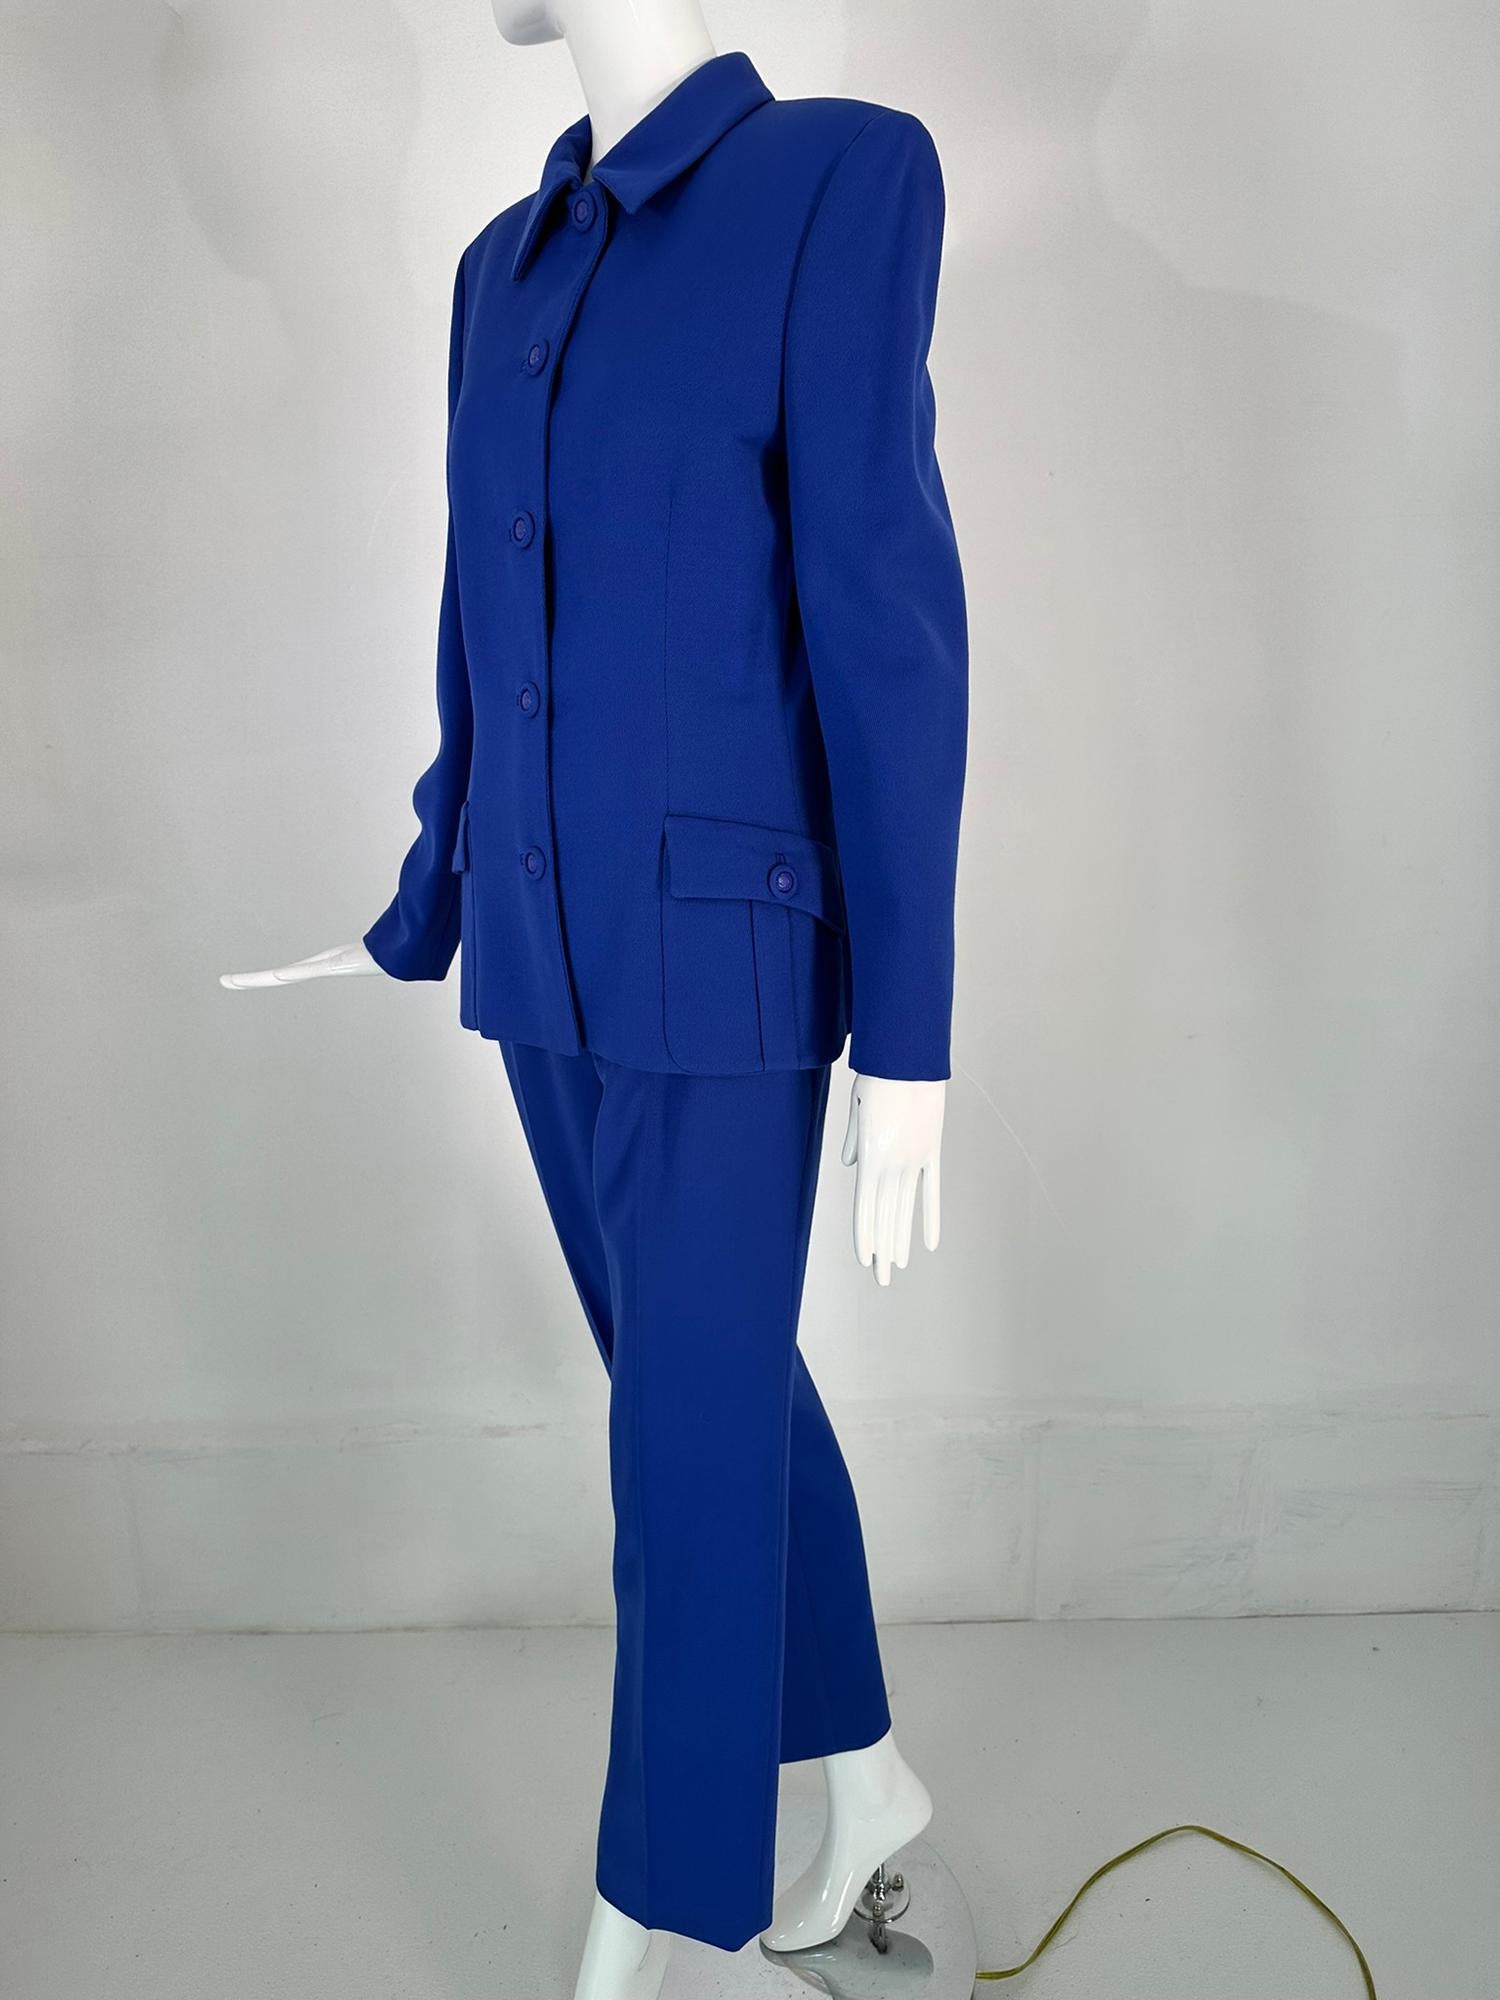 Gianni Versace Couture F/W 1995 Hosenanzug aus königsblauem Wollköper. Wunderschön geschneiderte Jacke, die vorne mit Knöpfen mit Medusa-Kopf in der Mitte geschlossen wird. Der Kragen kann bis oben zugeknöpft oder mit heruntergezogenem Kragen